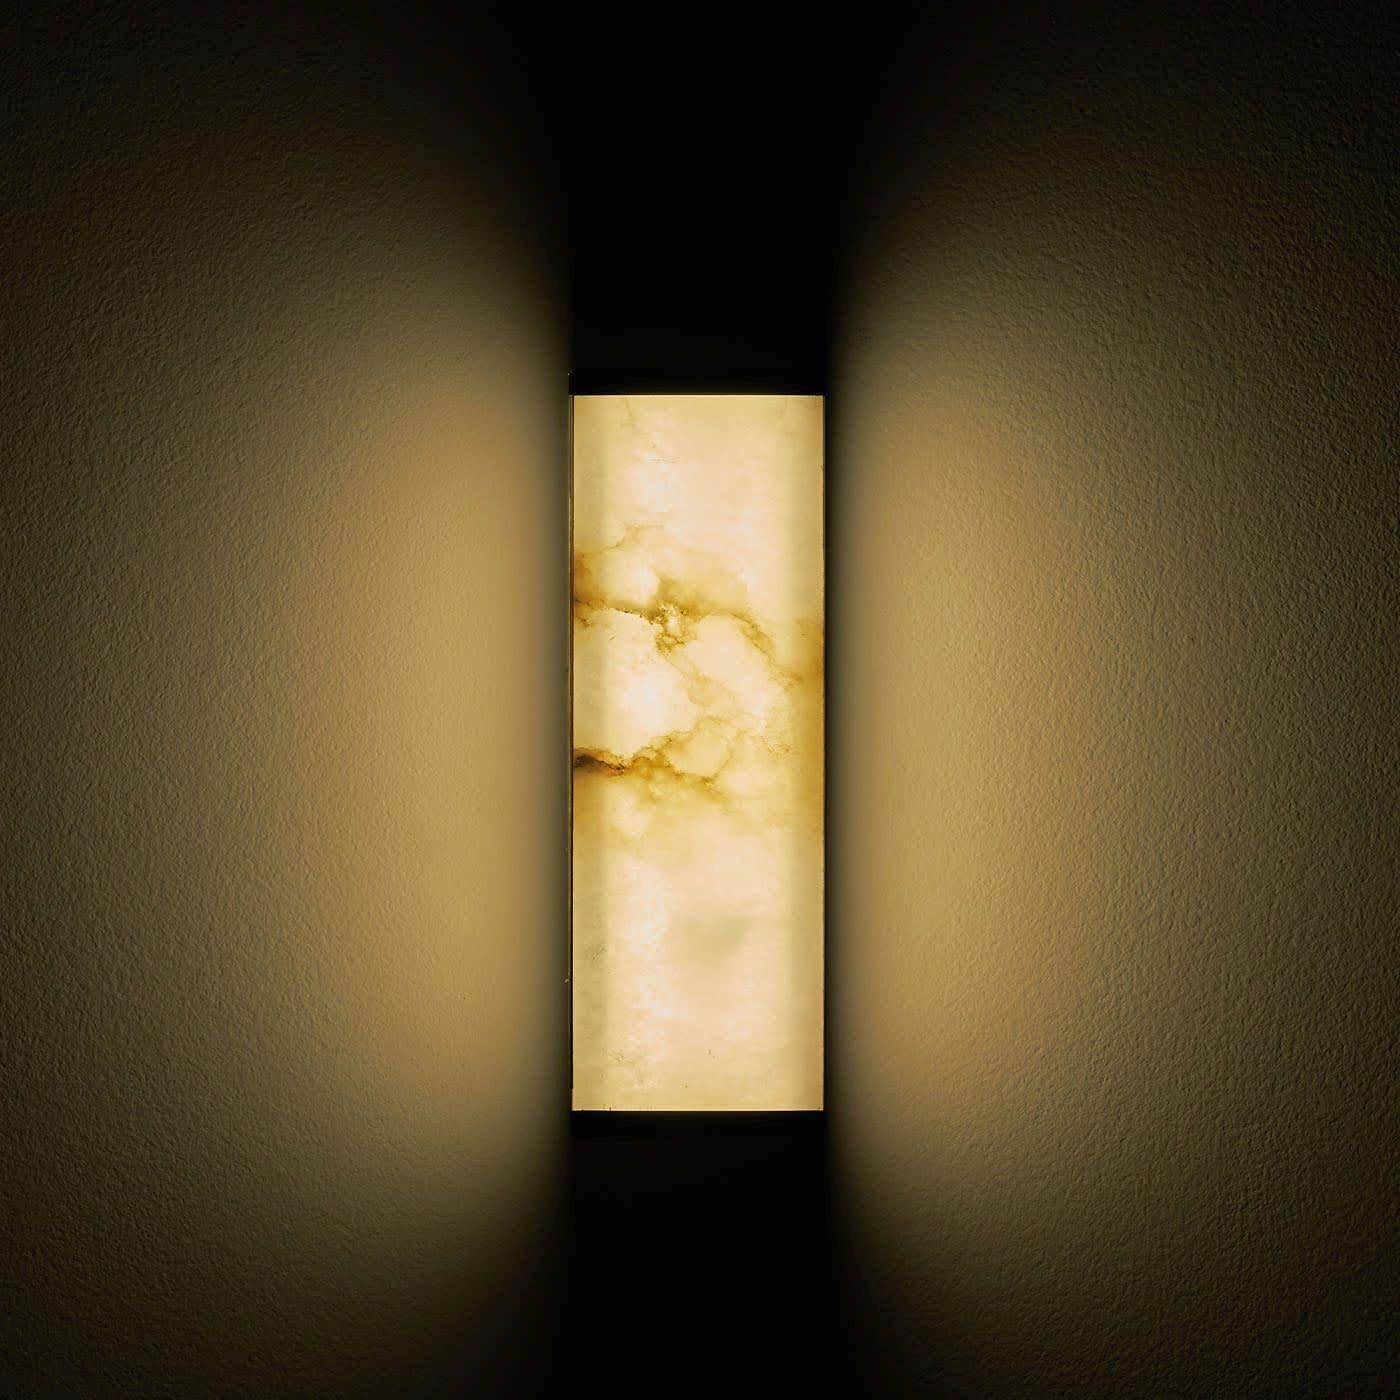 L'applique murale courte Tech a été conçue avec l'idée de fusionner le luminaire et l'abat-jour en un seul élément, jouant sur les transparences de la lumière à travers l'albâtre ultra-mince encastré dans un cadre en laiton satiné avec une forme